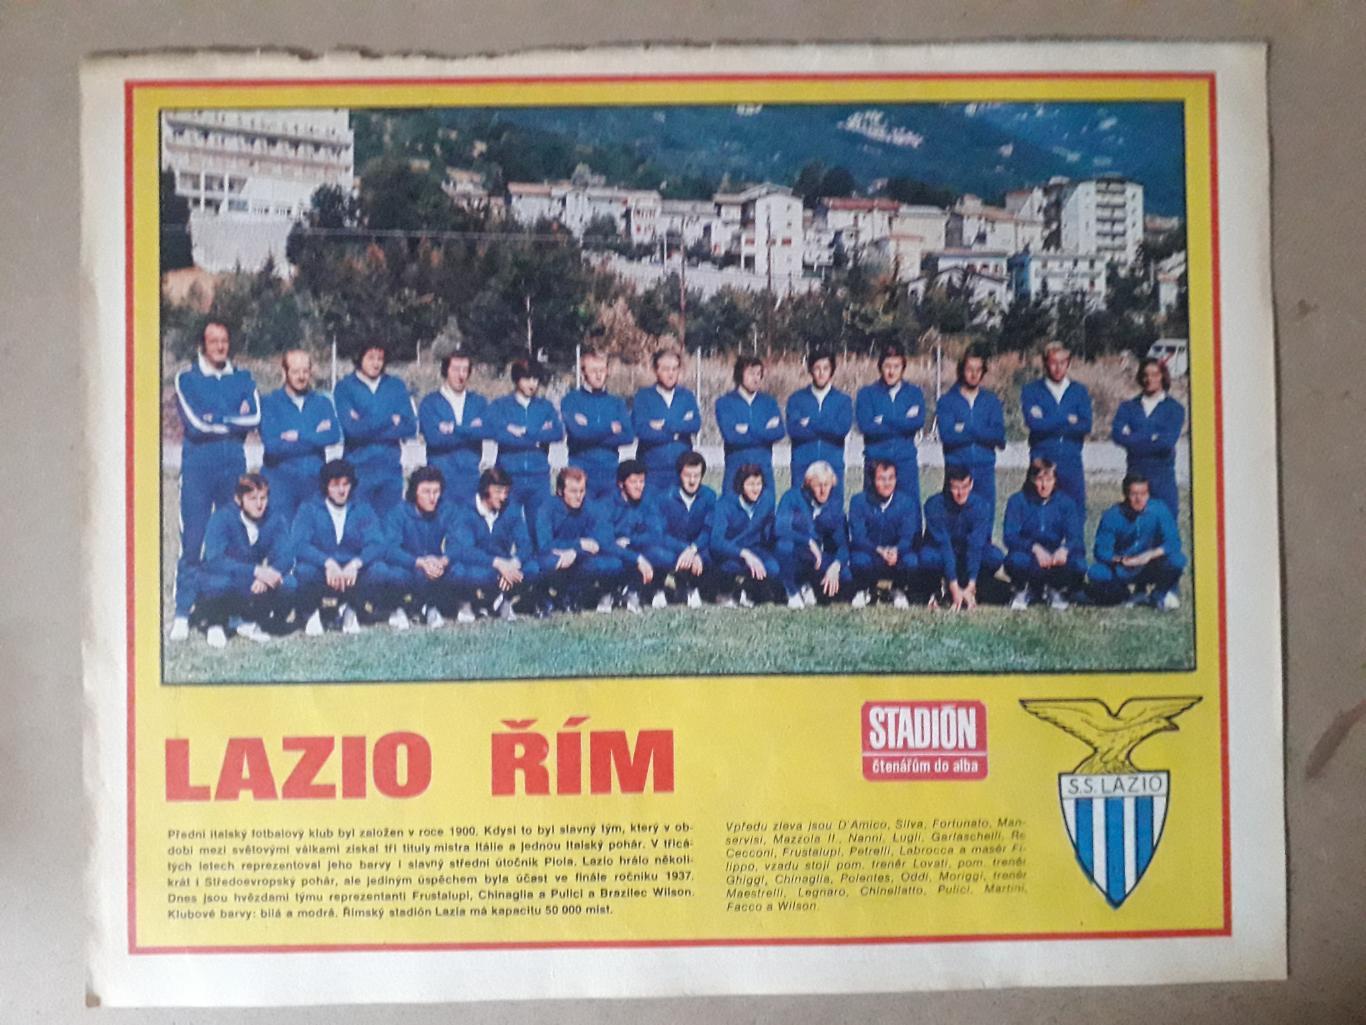 Постер из журнала Stadion- Lazio